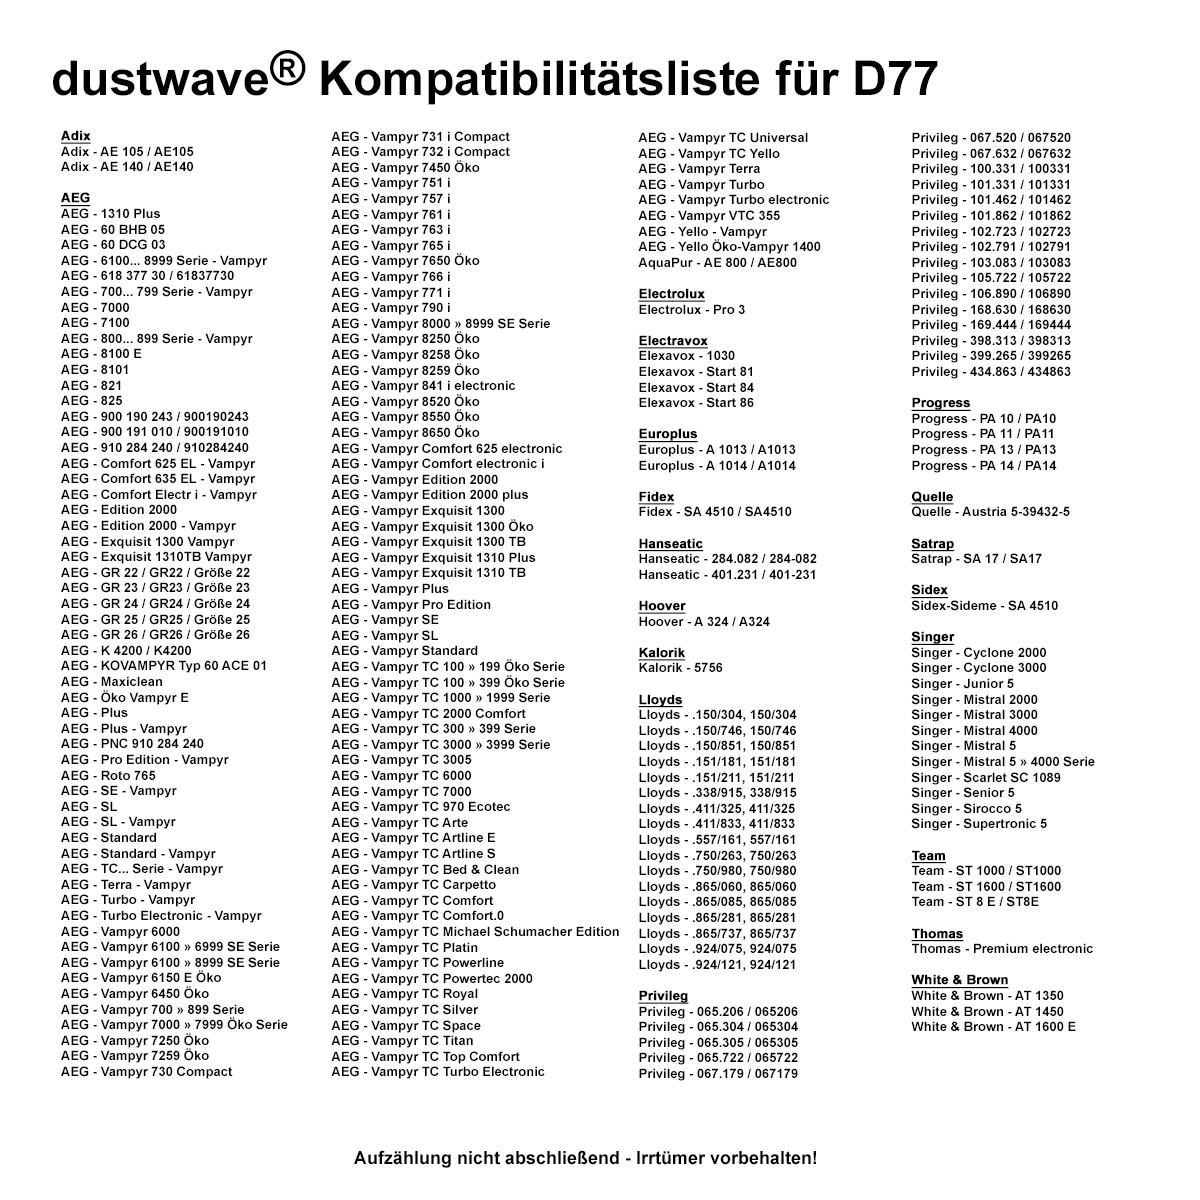 Dustwave® 1 Staubsaugerbeutel für AEG Vampyr SE Electronic - hocheffizient, mehrlagiges Mikrovlies mit Hygieneverschluss - Made in Germany